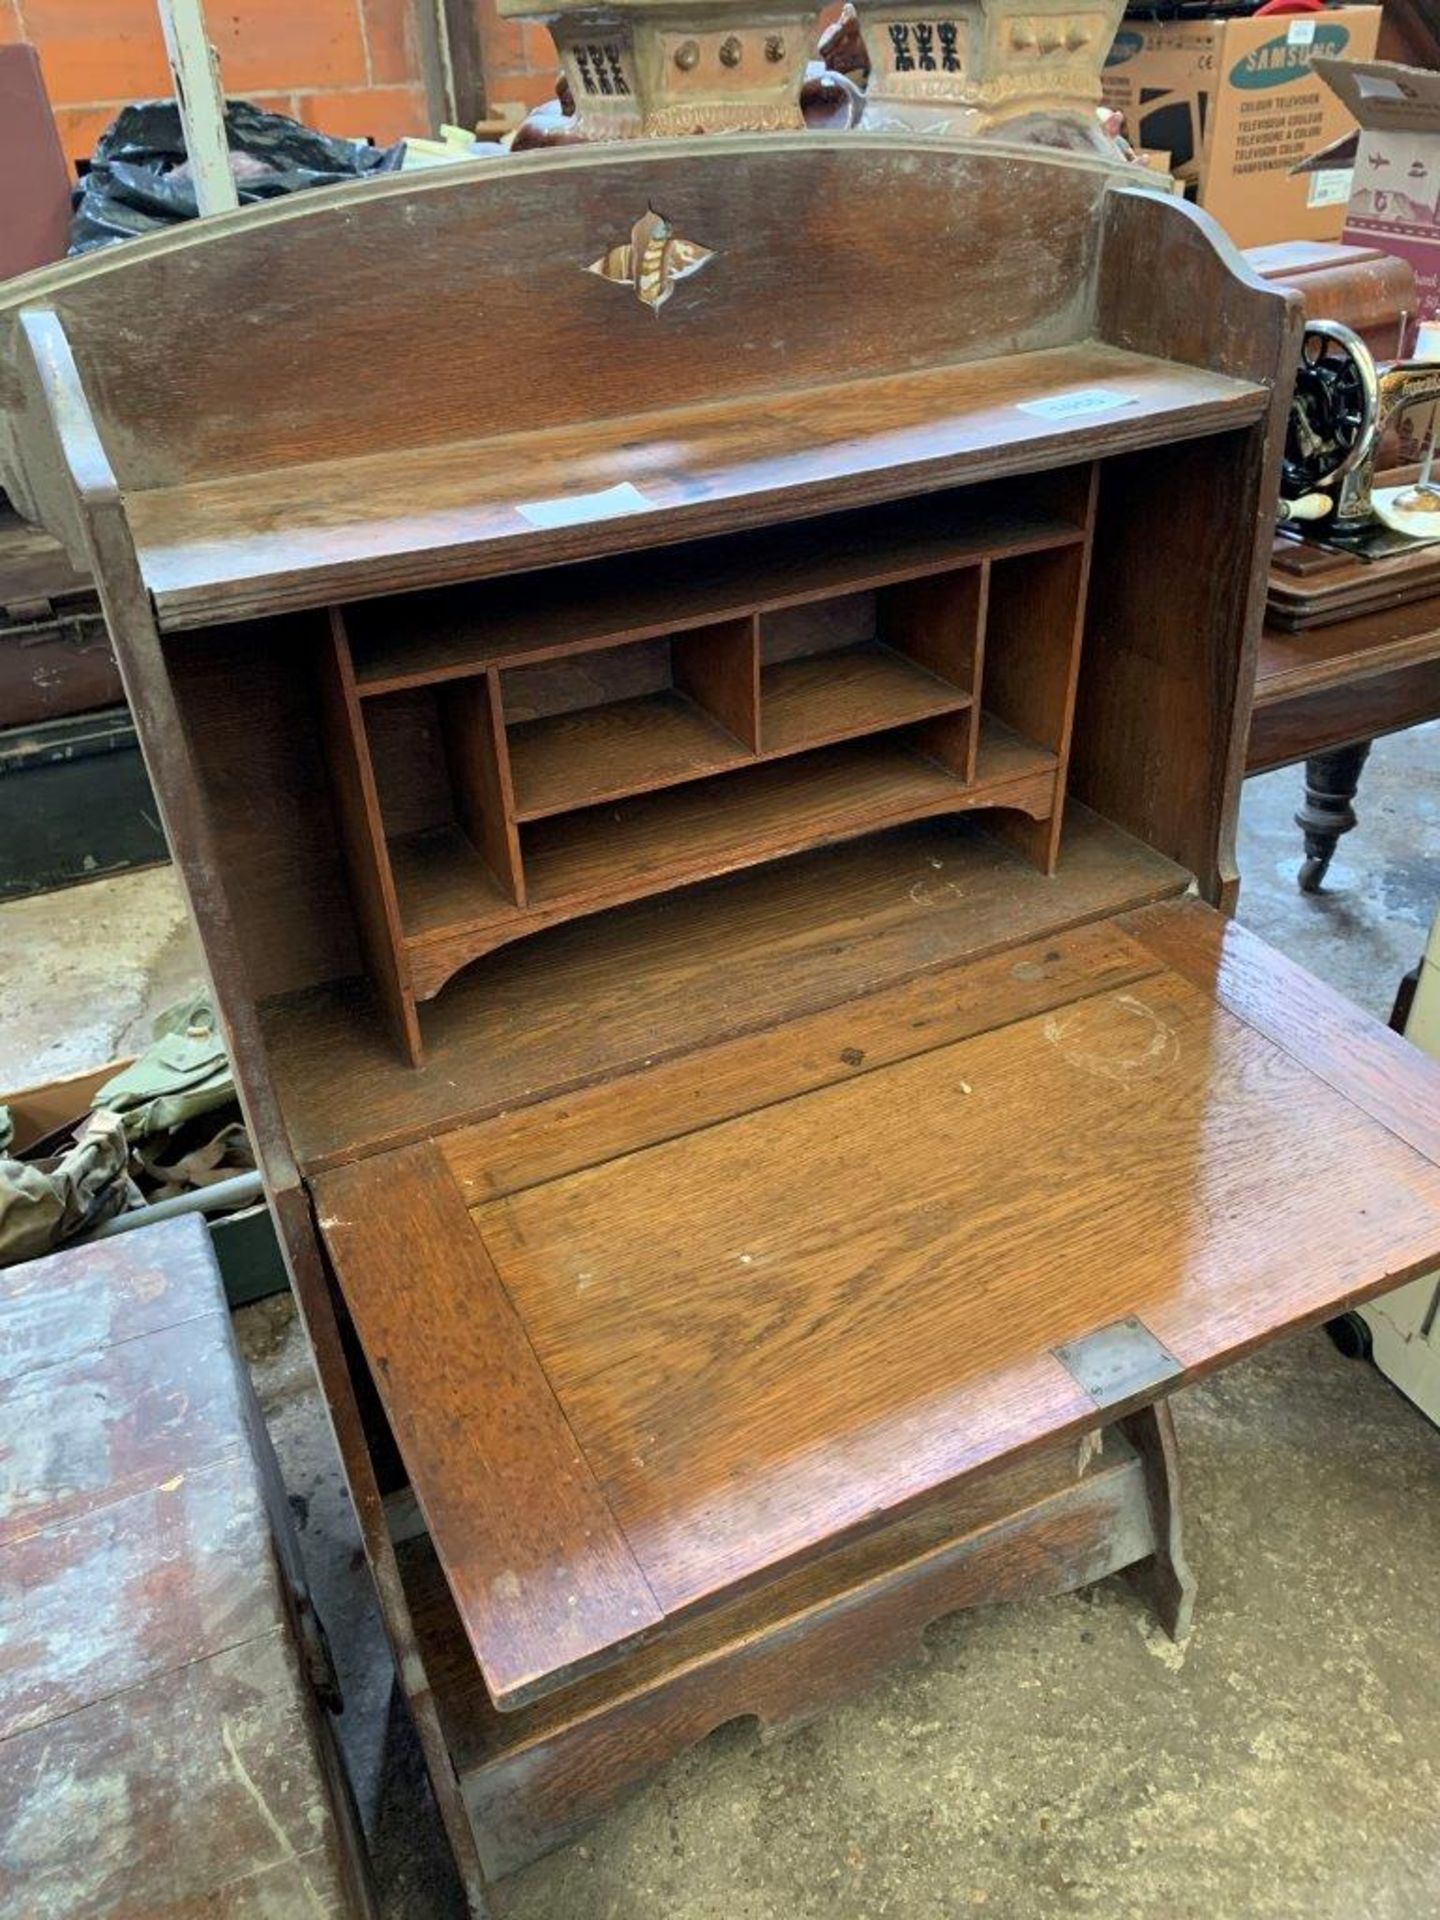 1930's oak bureau and bookcase beneath.